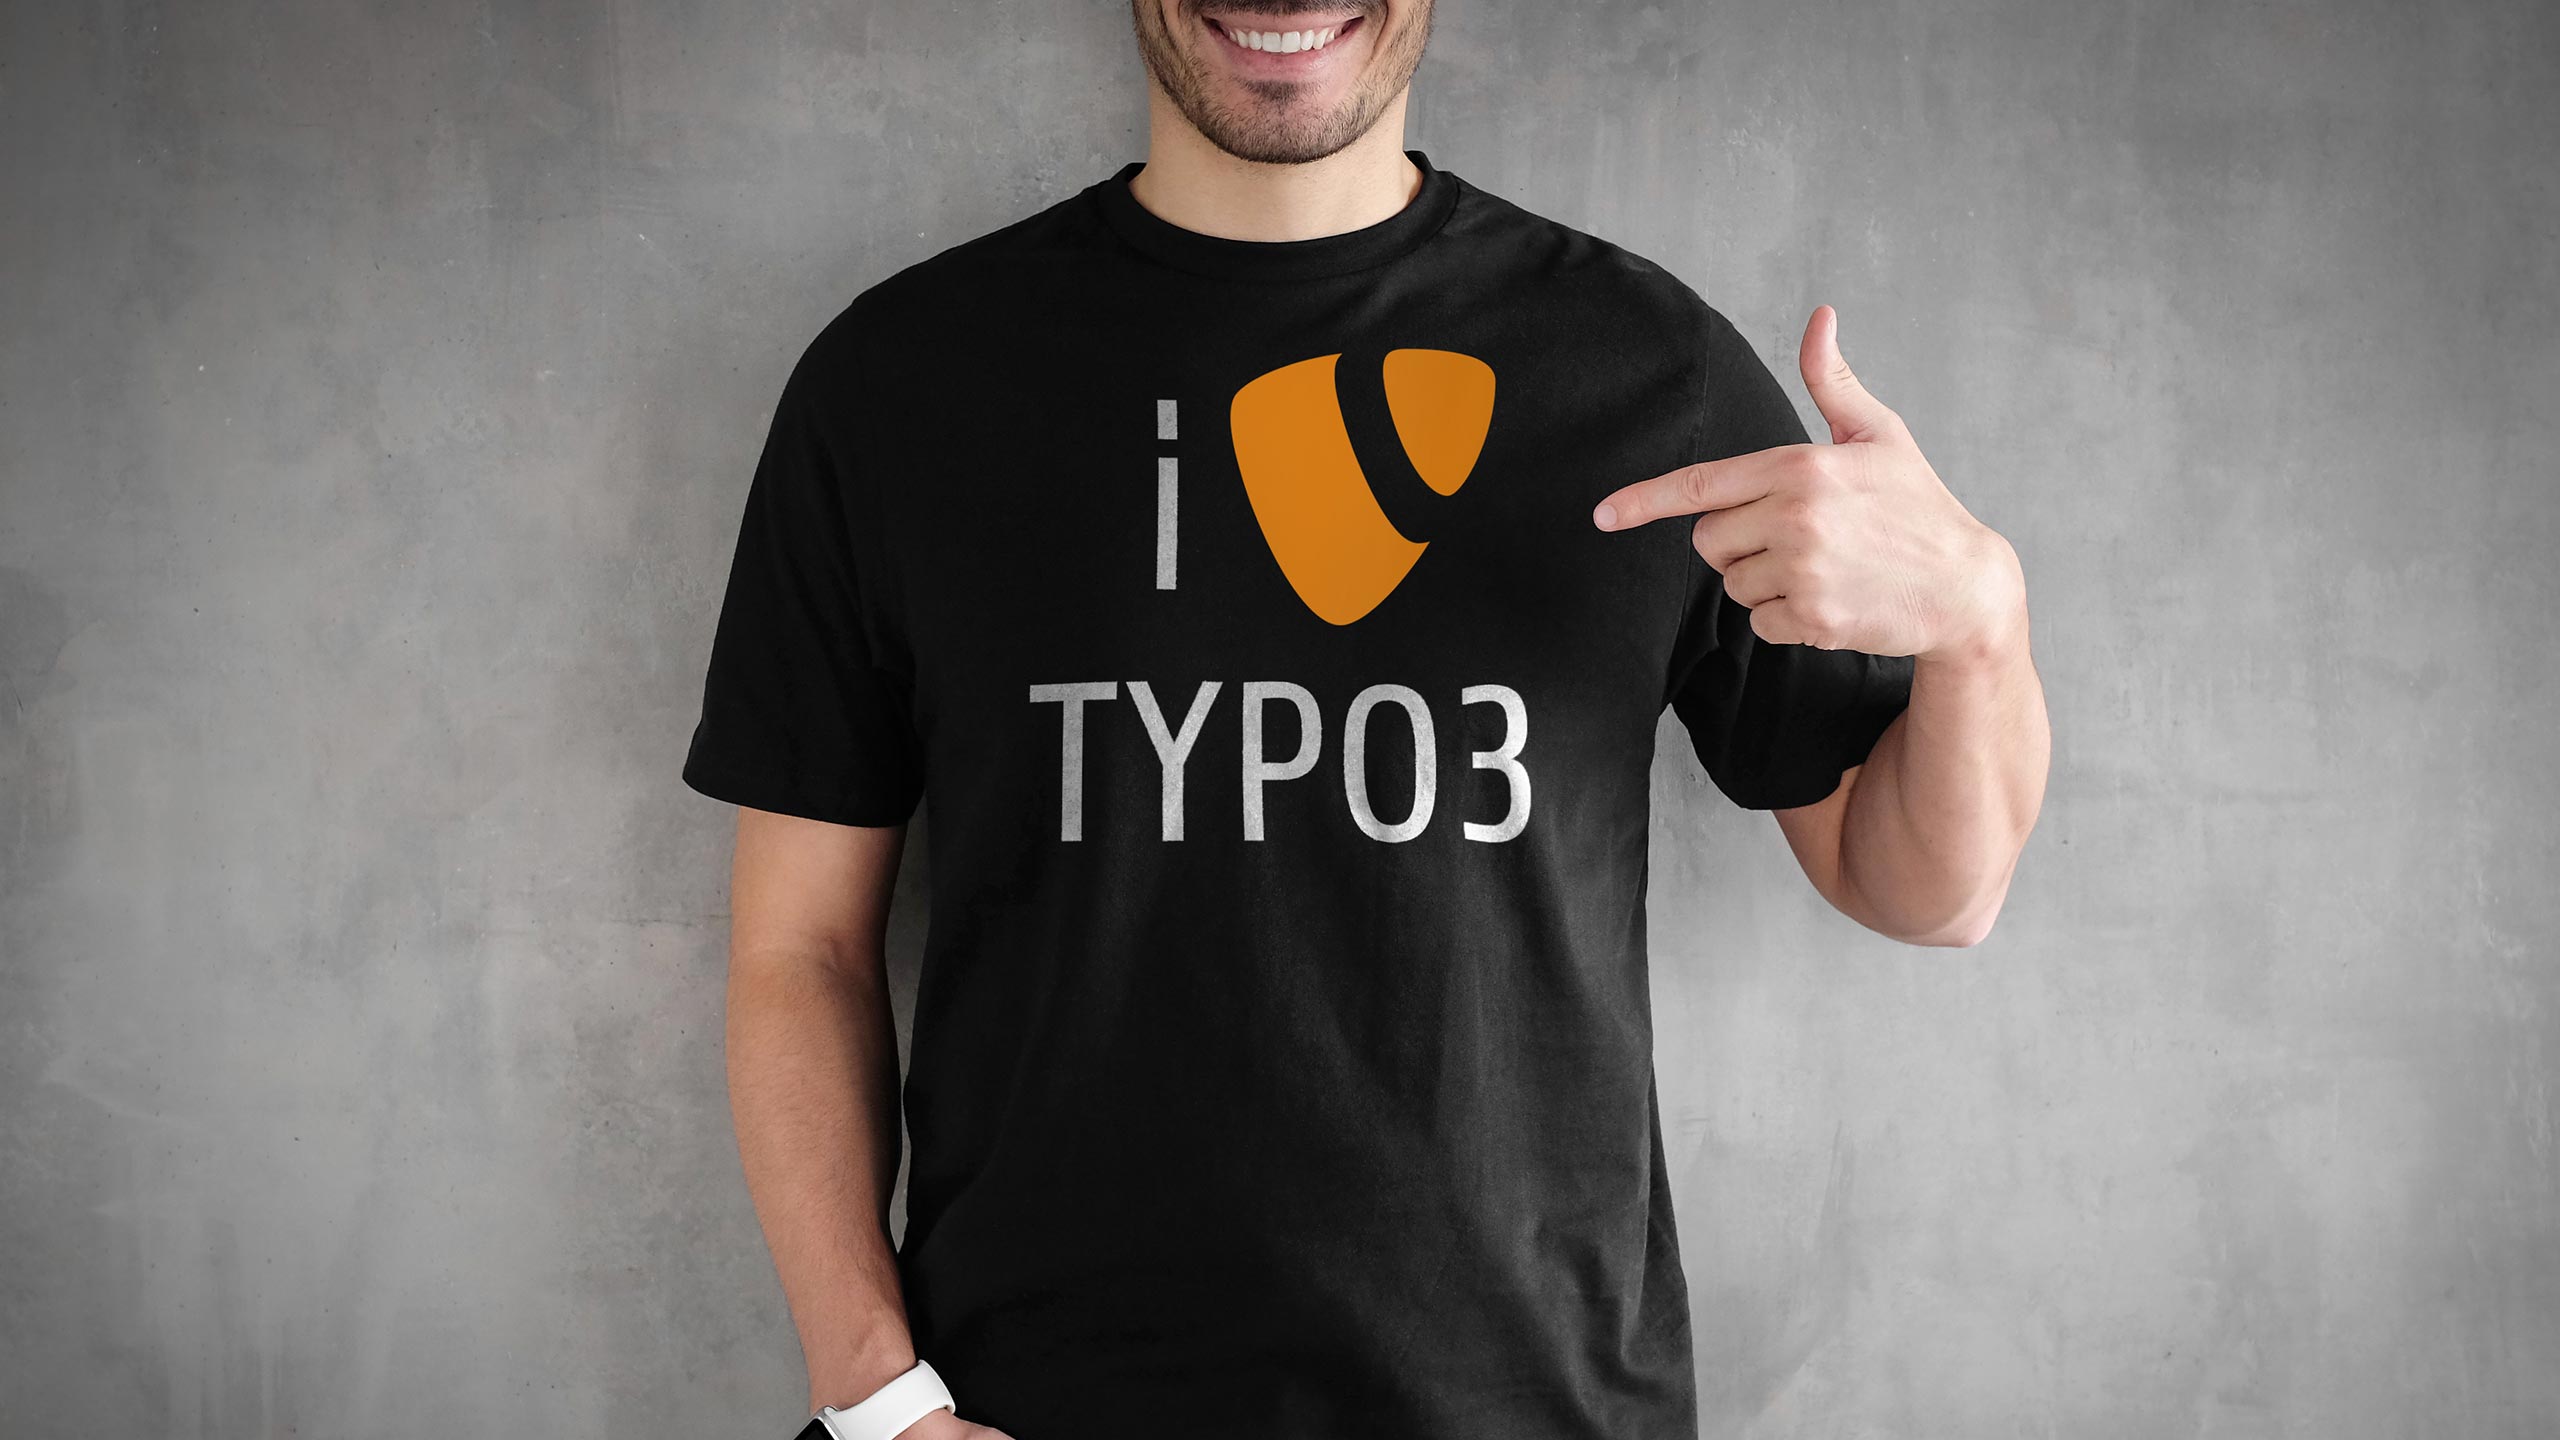 Mann mit TYPO3-T-Shirt